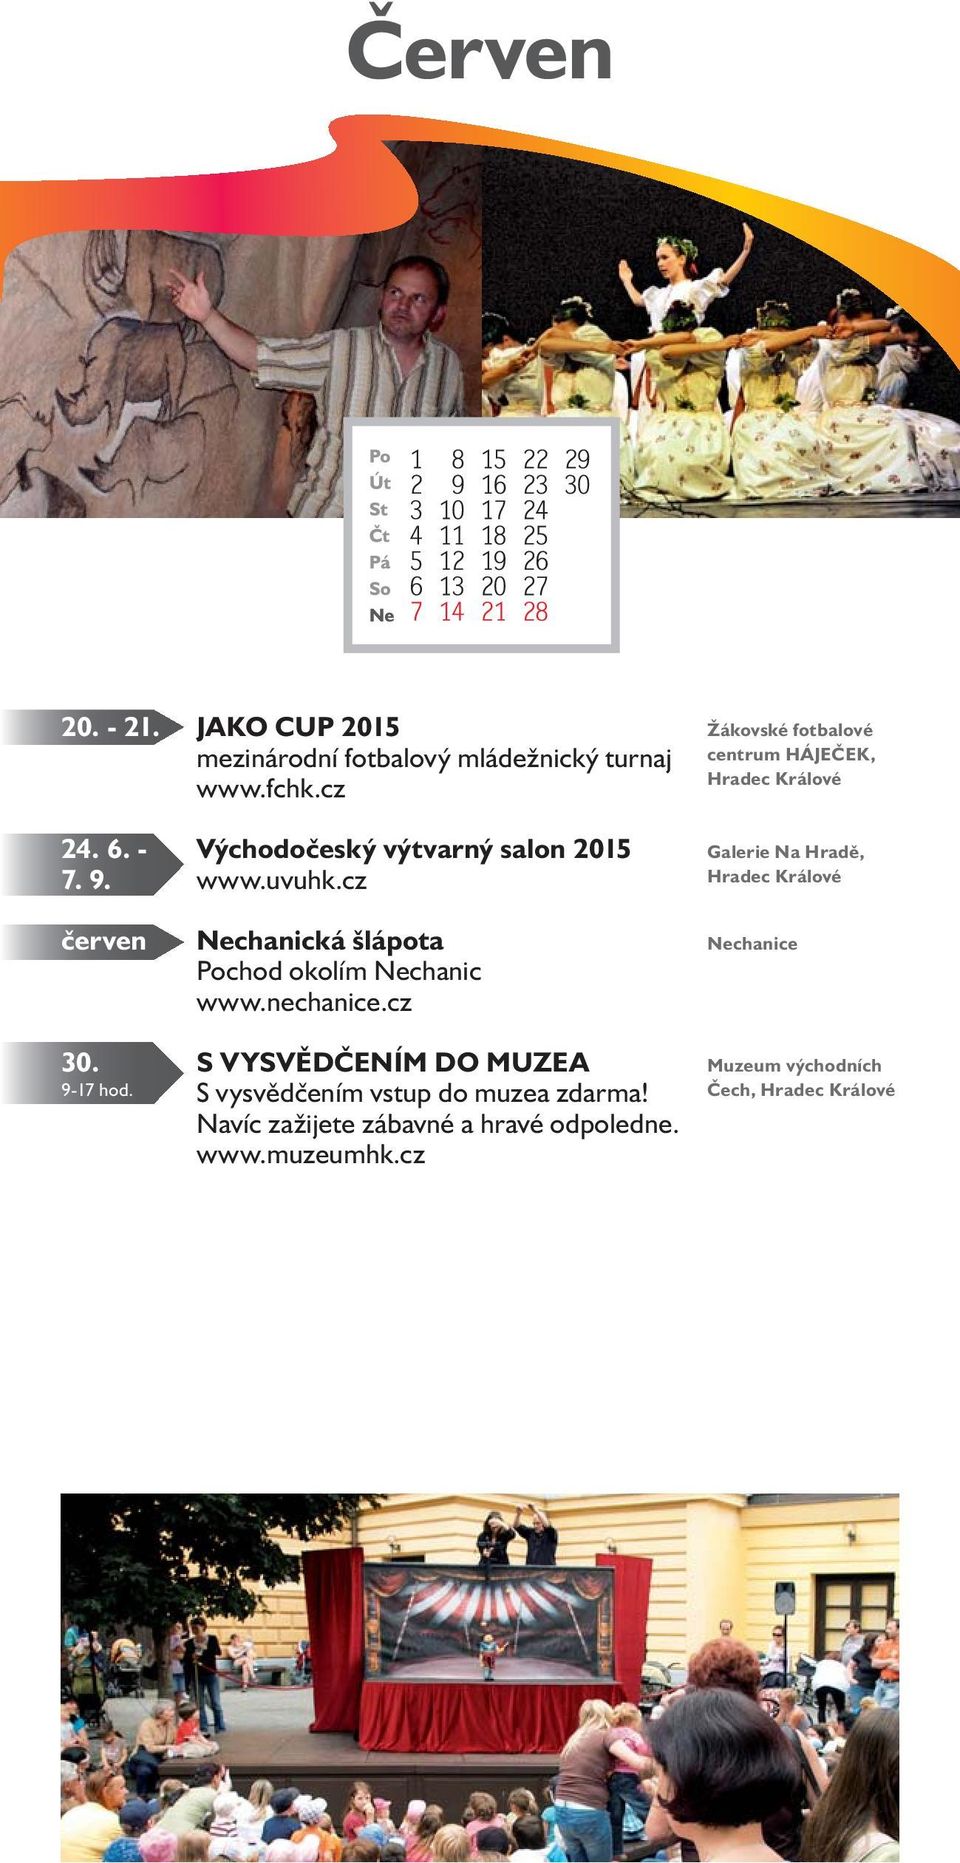 6. - Východočeský výtvarný salon 2015 Galerie Na Hradě, 7. 9. www.uvuhk.